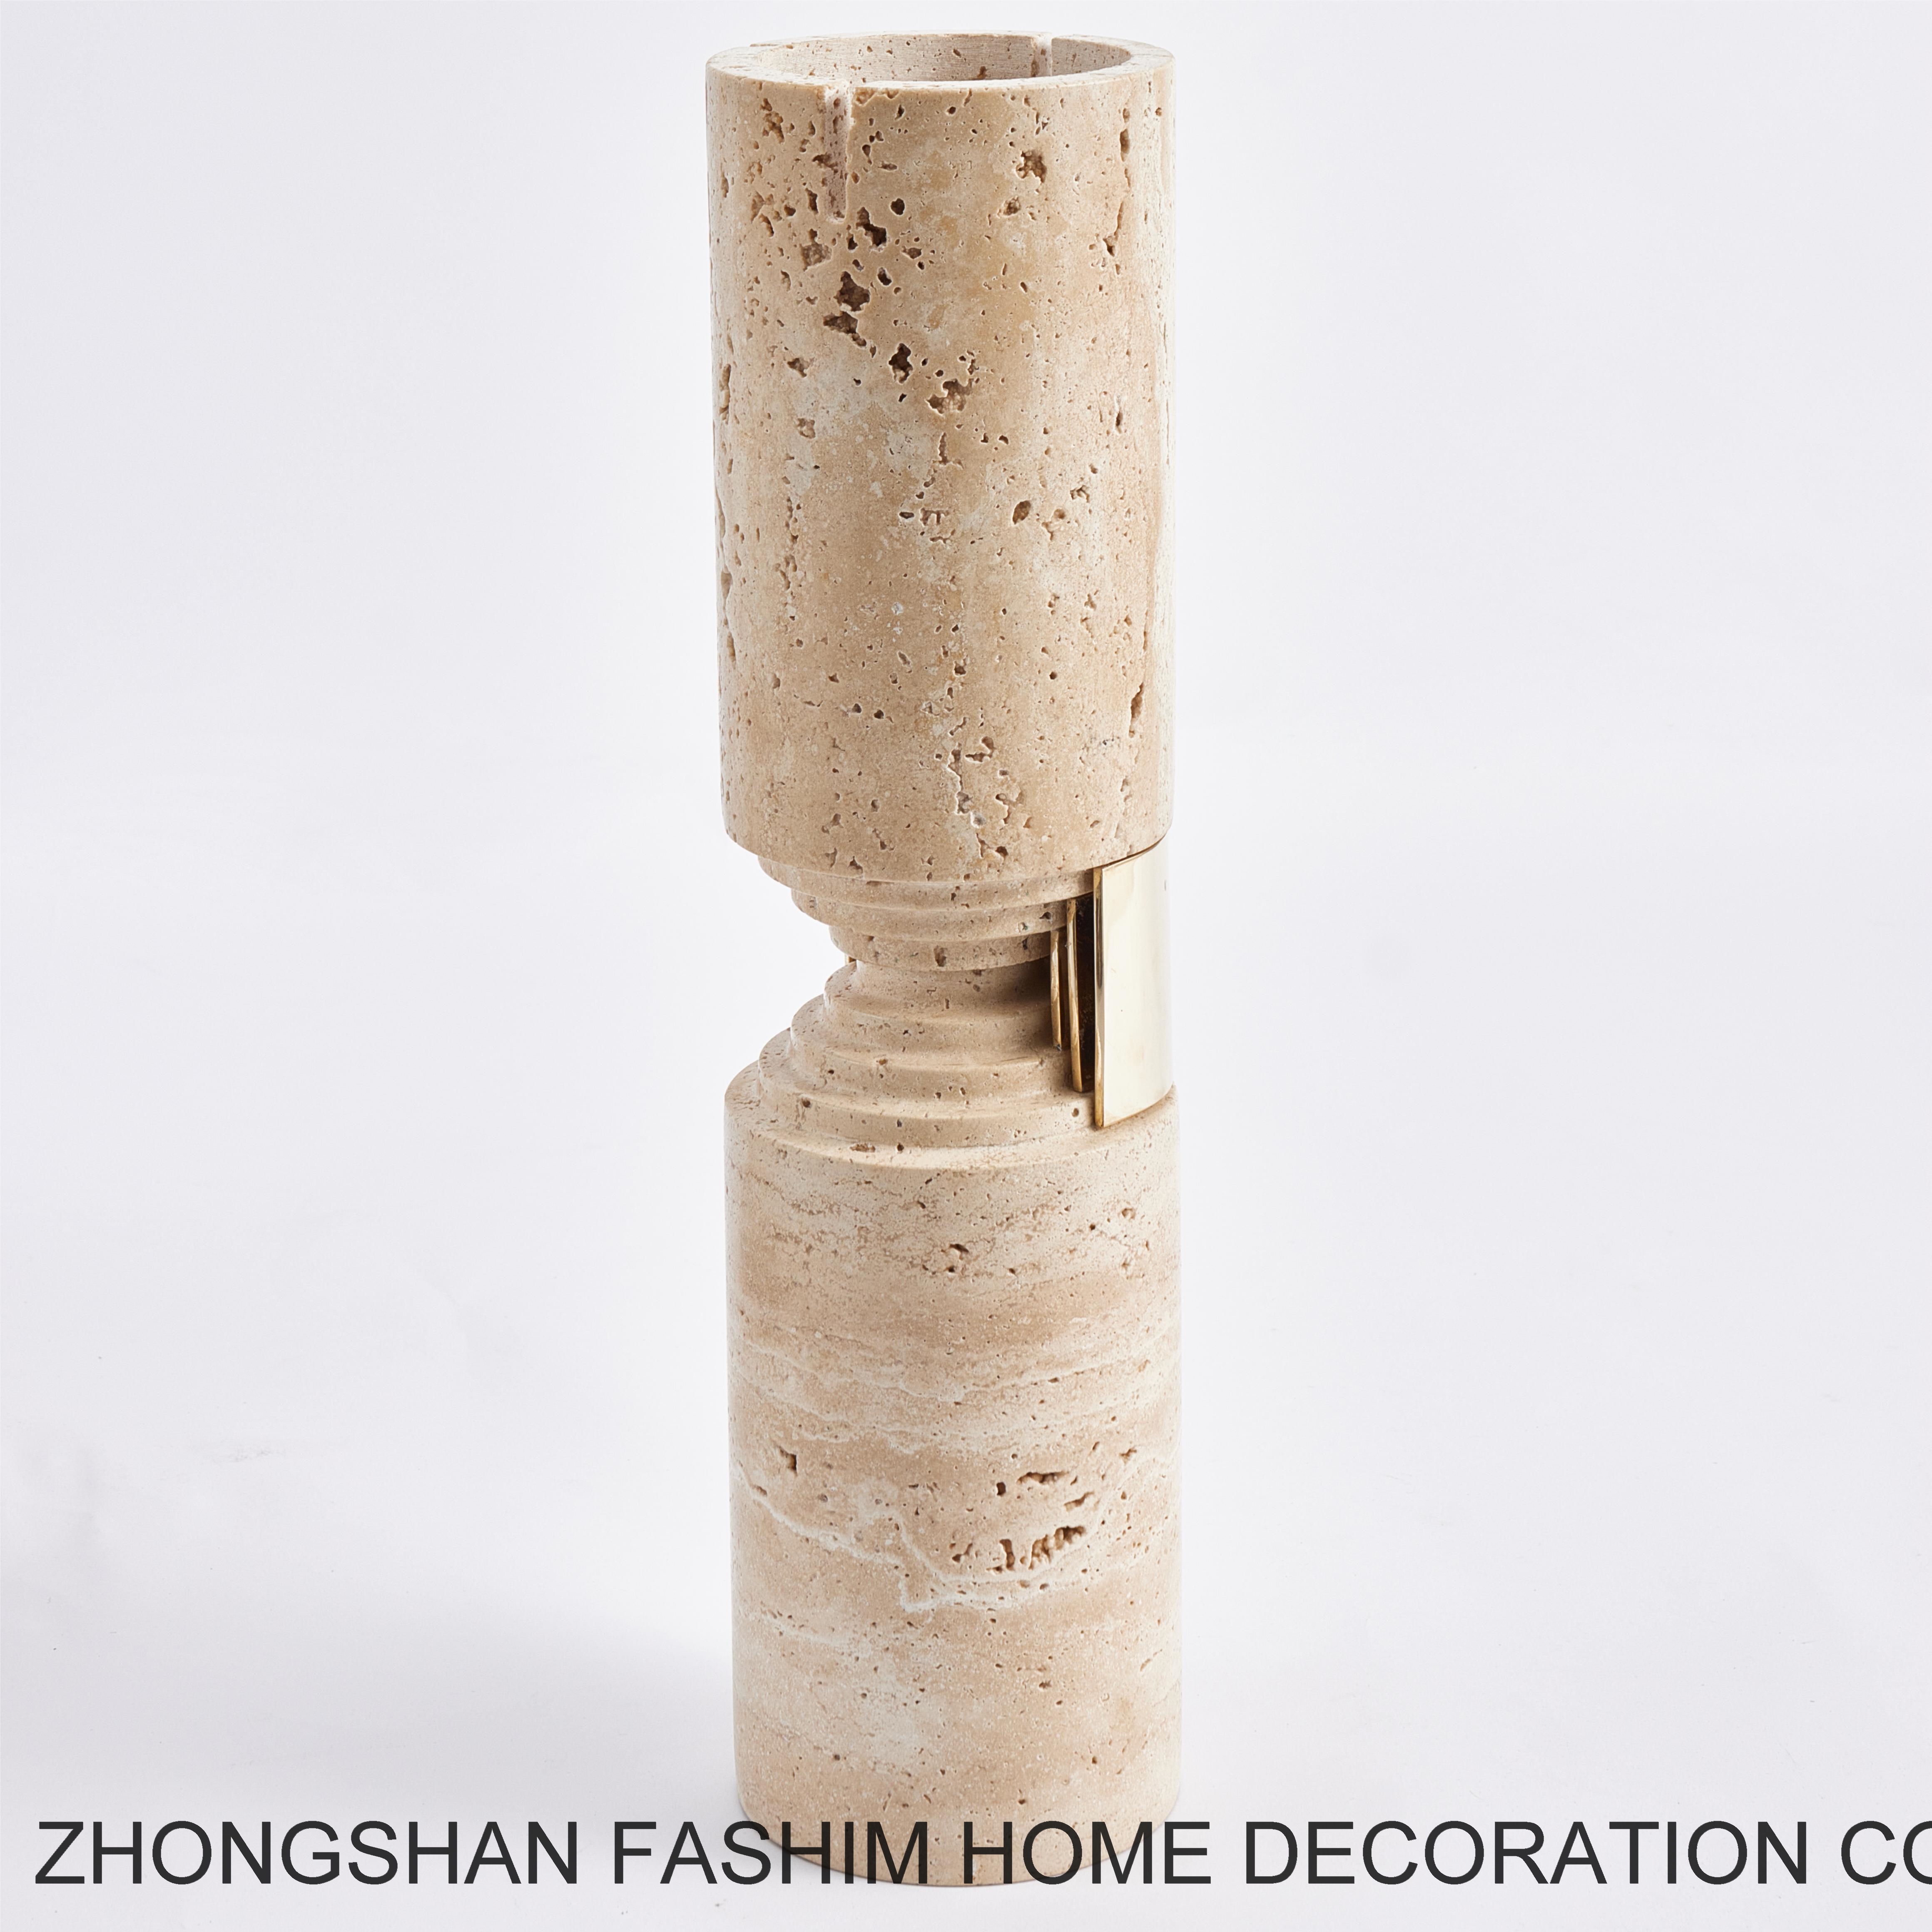 Fashimdecor Home Decor Marble Candle Holder